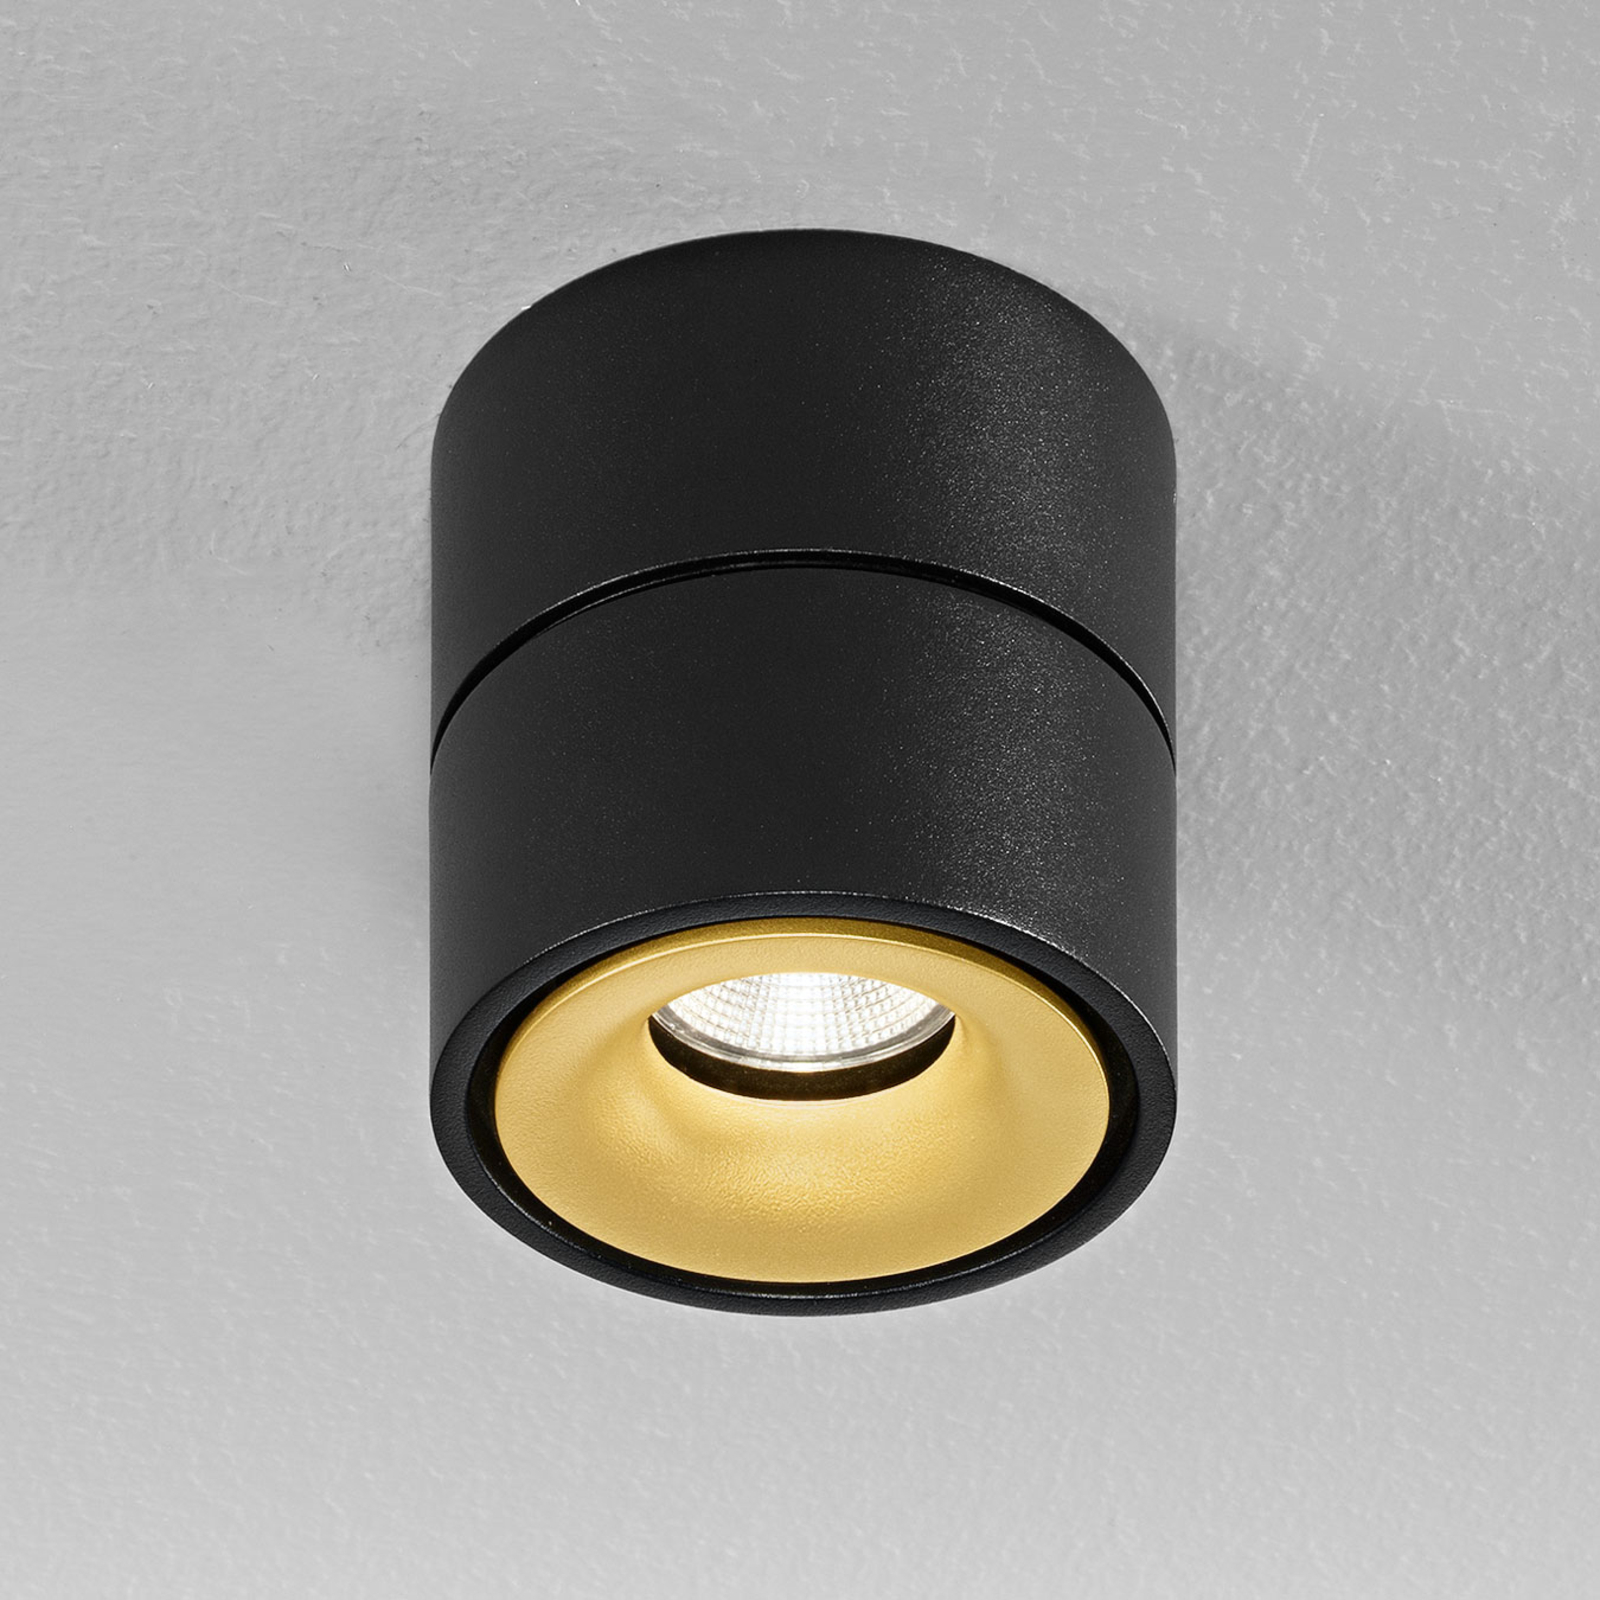 Egger Clippo LED-takspot, svart-gull, 3 000 K